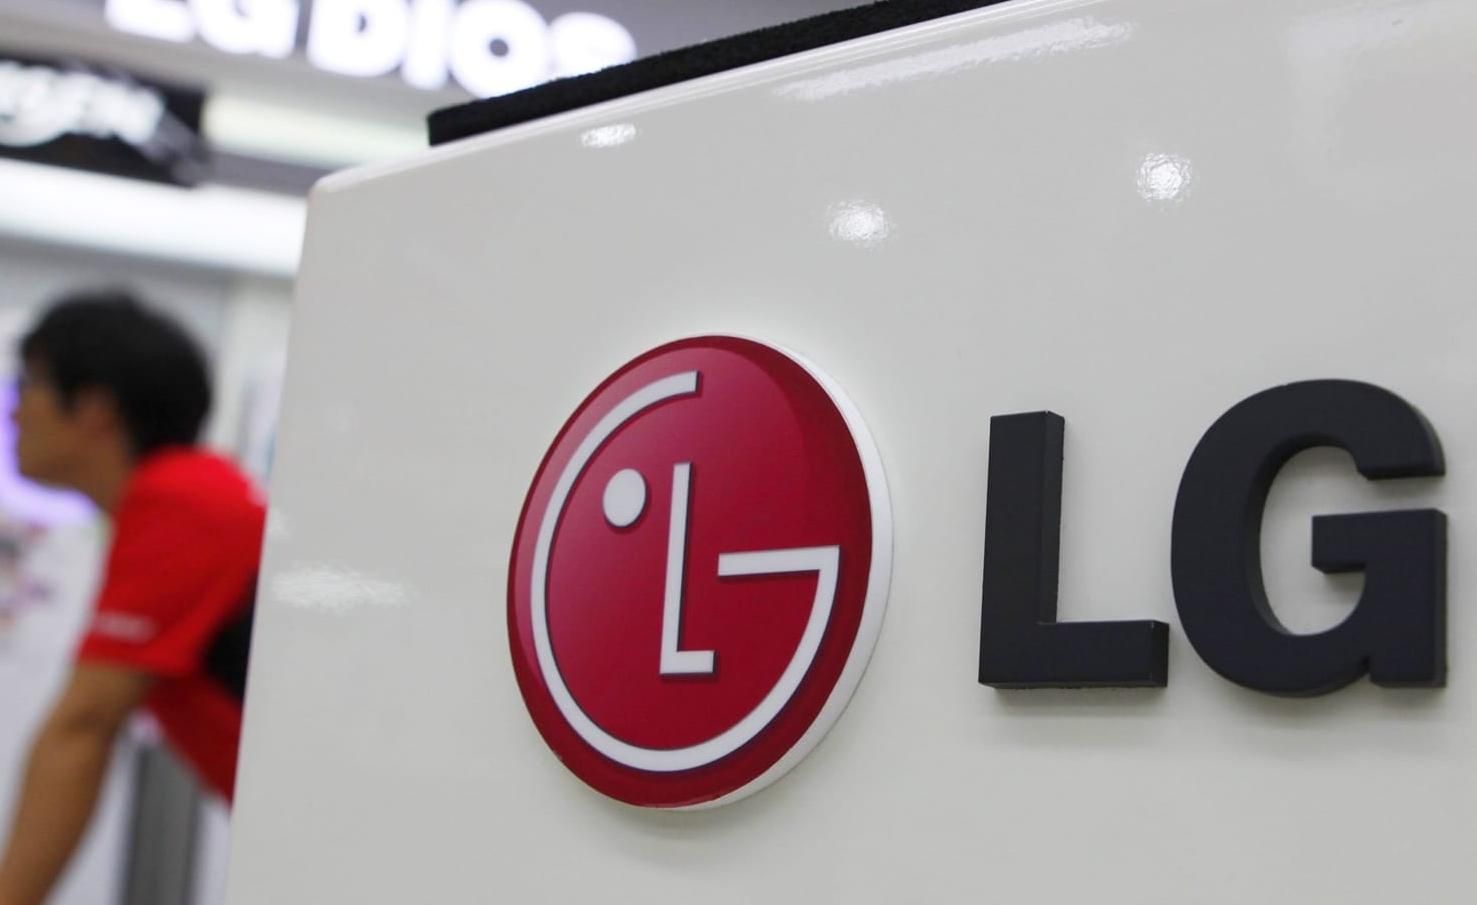 Випуск бюджетних смартфонів міг привести LG до банкрутства